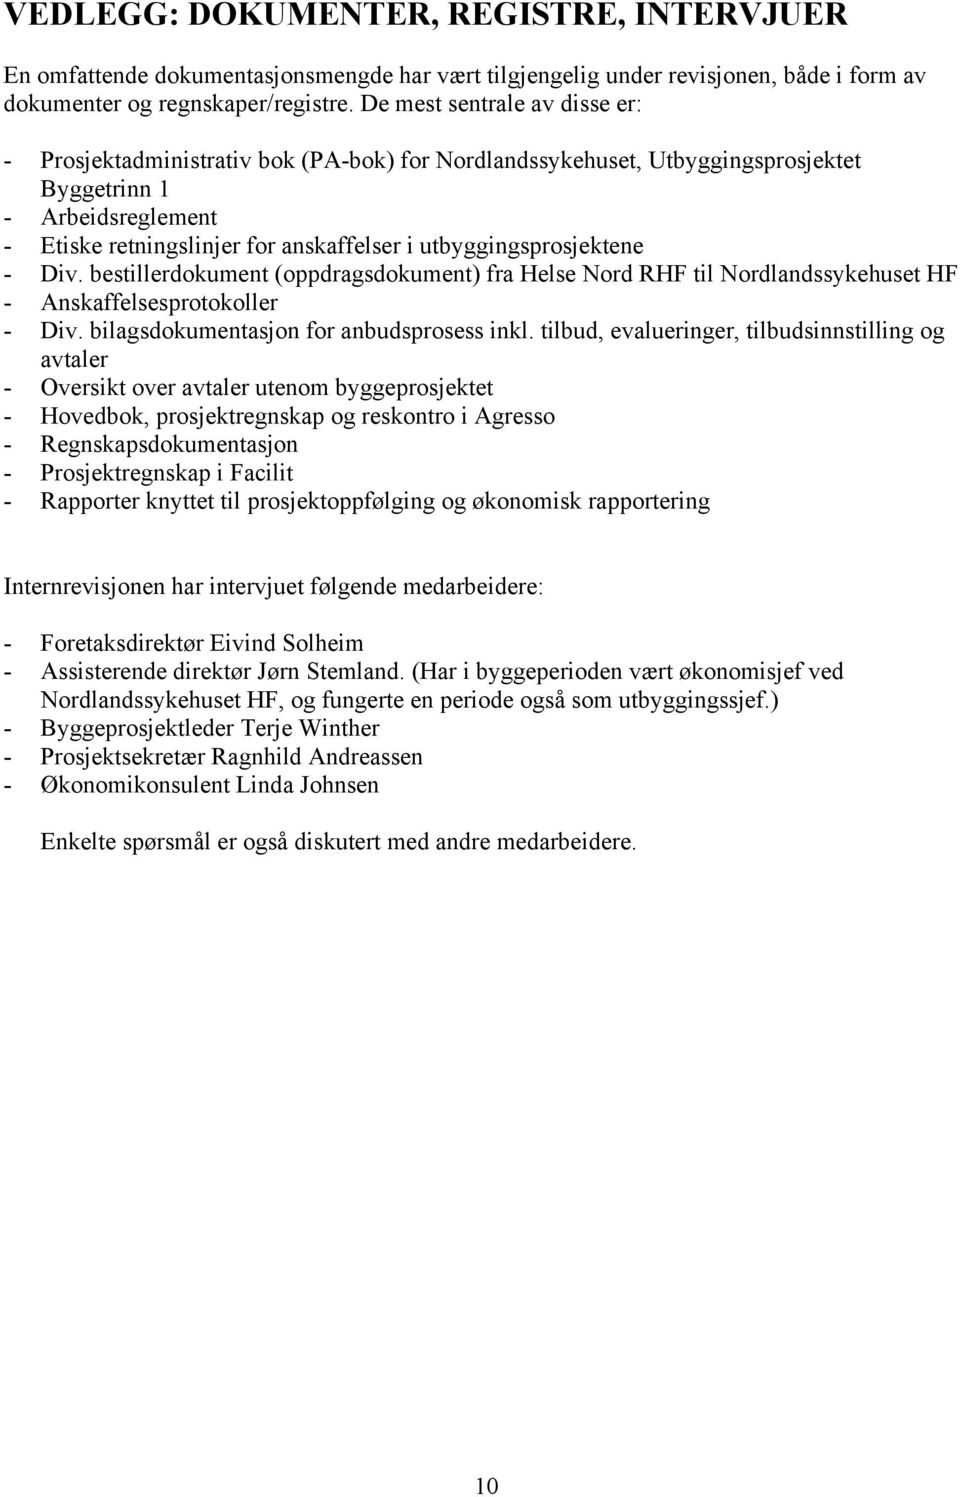 utbyggingsprosjektene - Div. bestillerdokument (oppdragsdokument) fra Helse Nord RHF til Nordlandssykehuset HF - Anskaffelsesprotokoller - Div. bilagsdokumentasjon for anbudsprosess inkl.